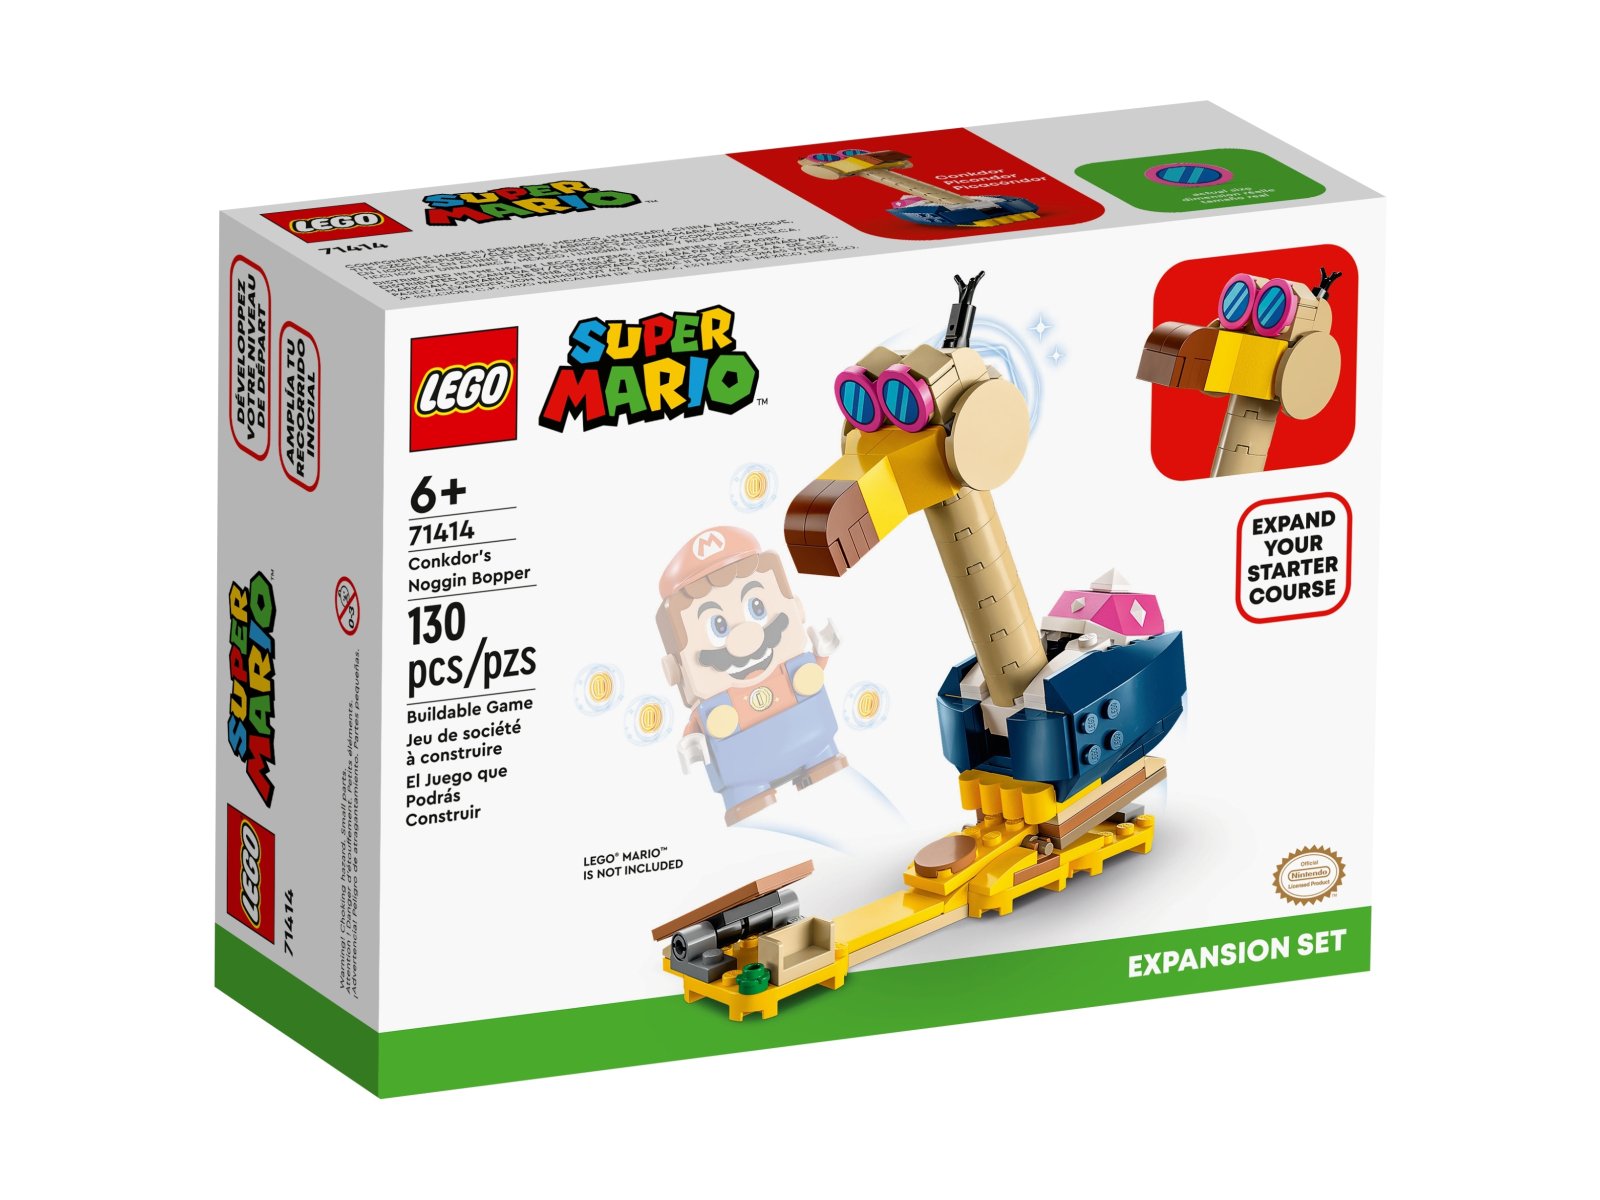 LEGO 71414 Conkdor's Noggin Bopper — zestaw rozszerzający